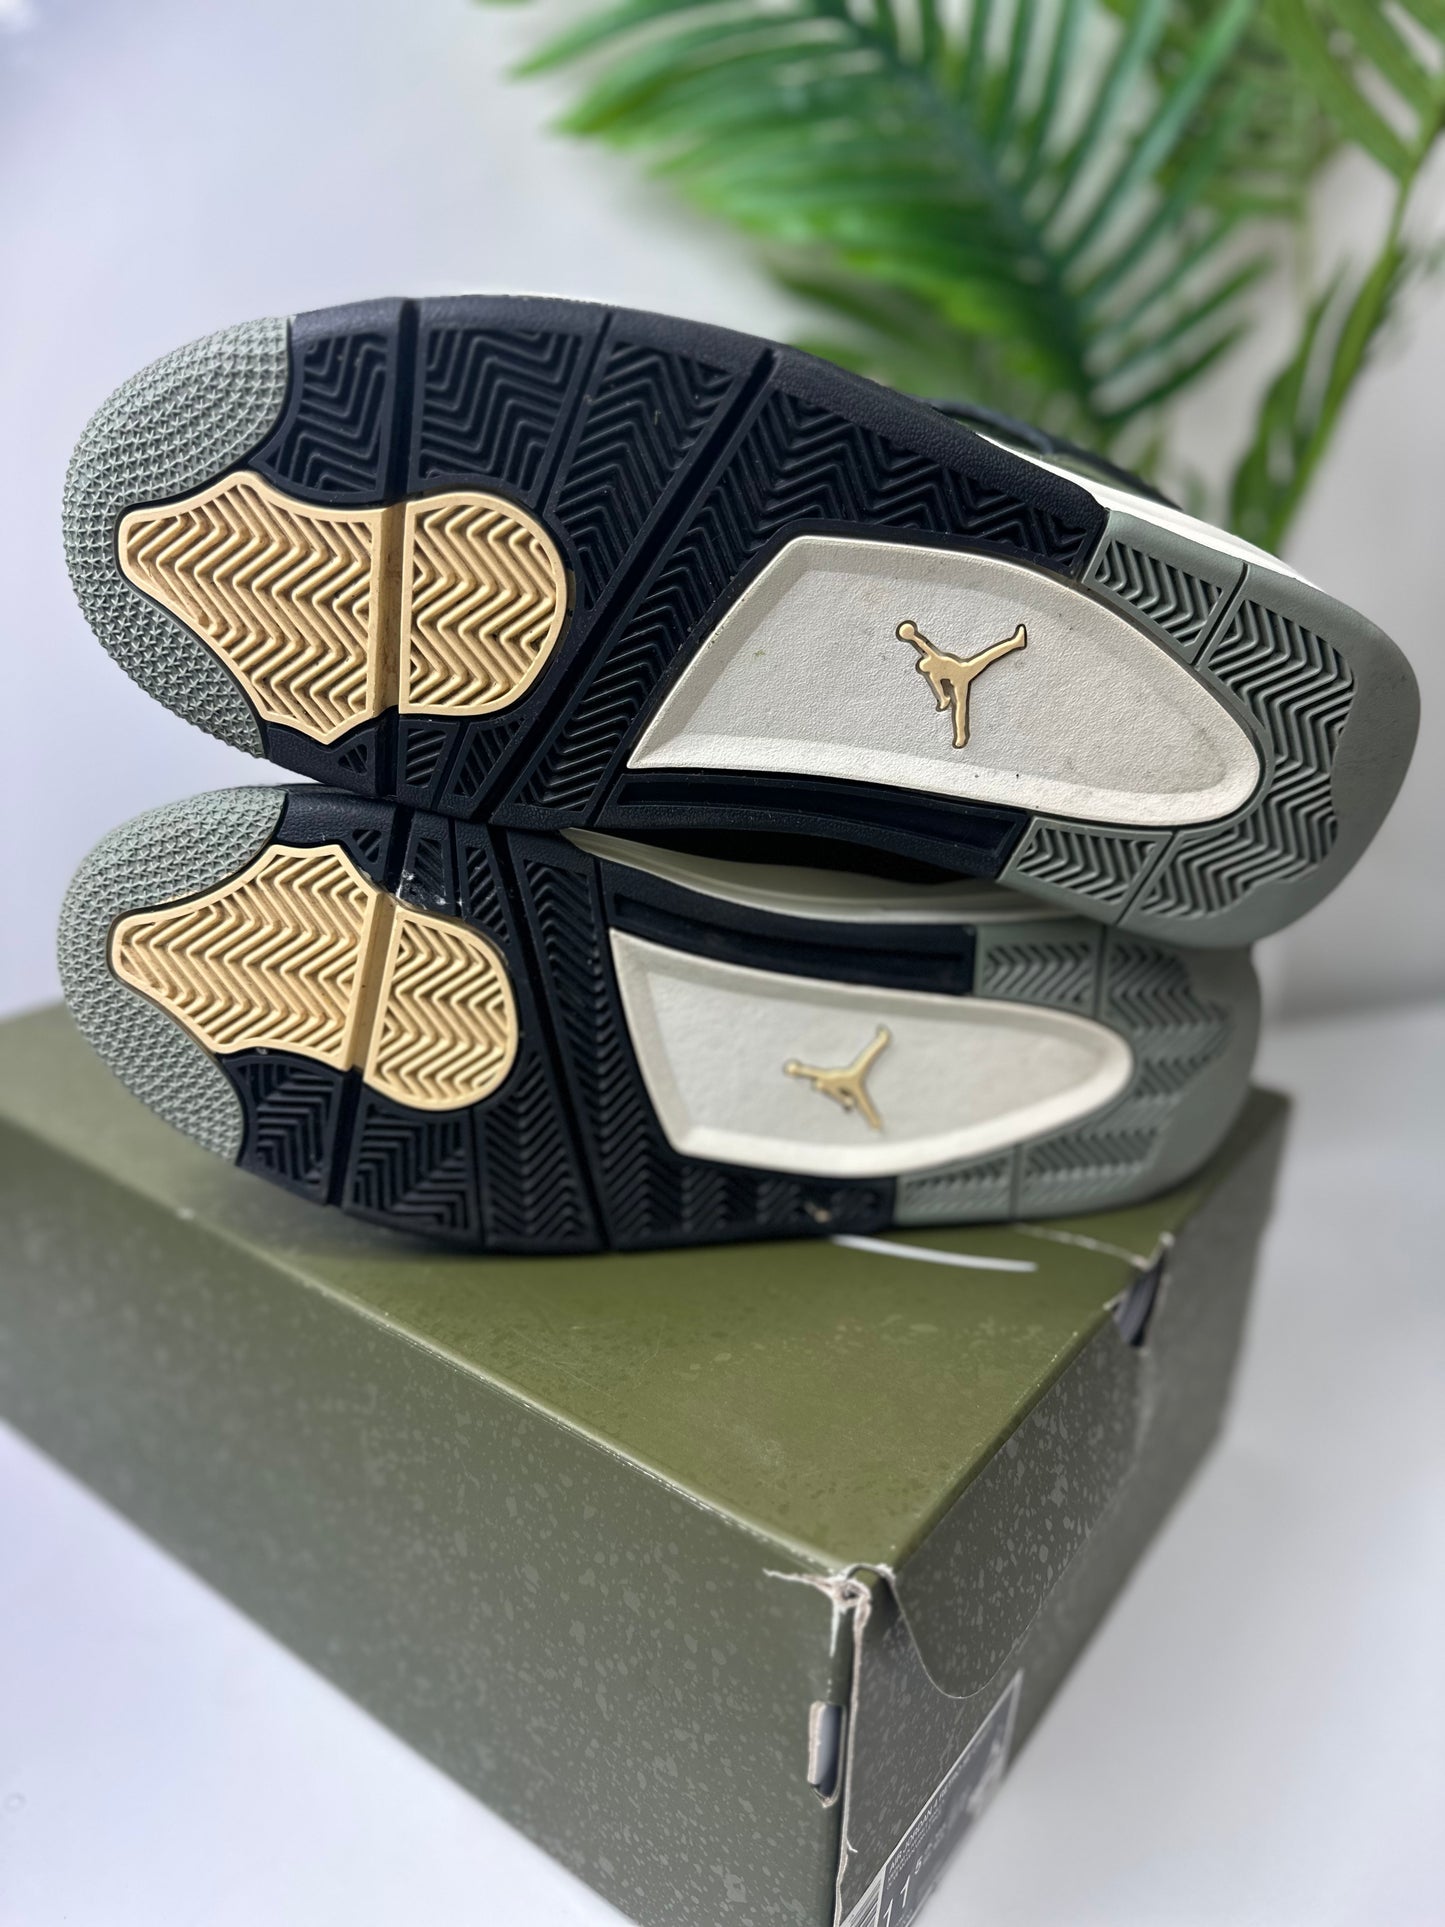 Air Jordan 4 Craft “Medium Olive” Size 11.5 PO OG